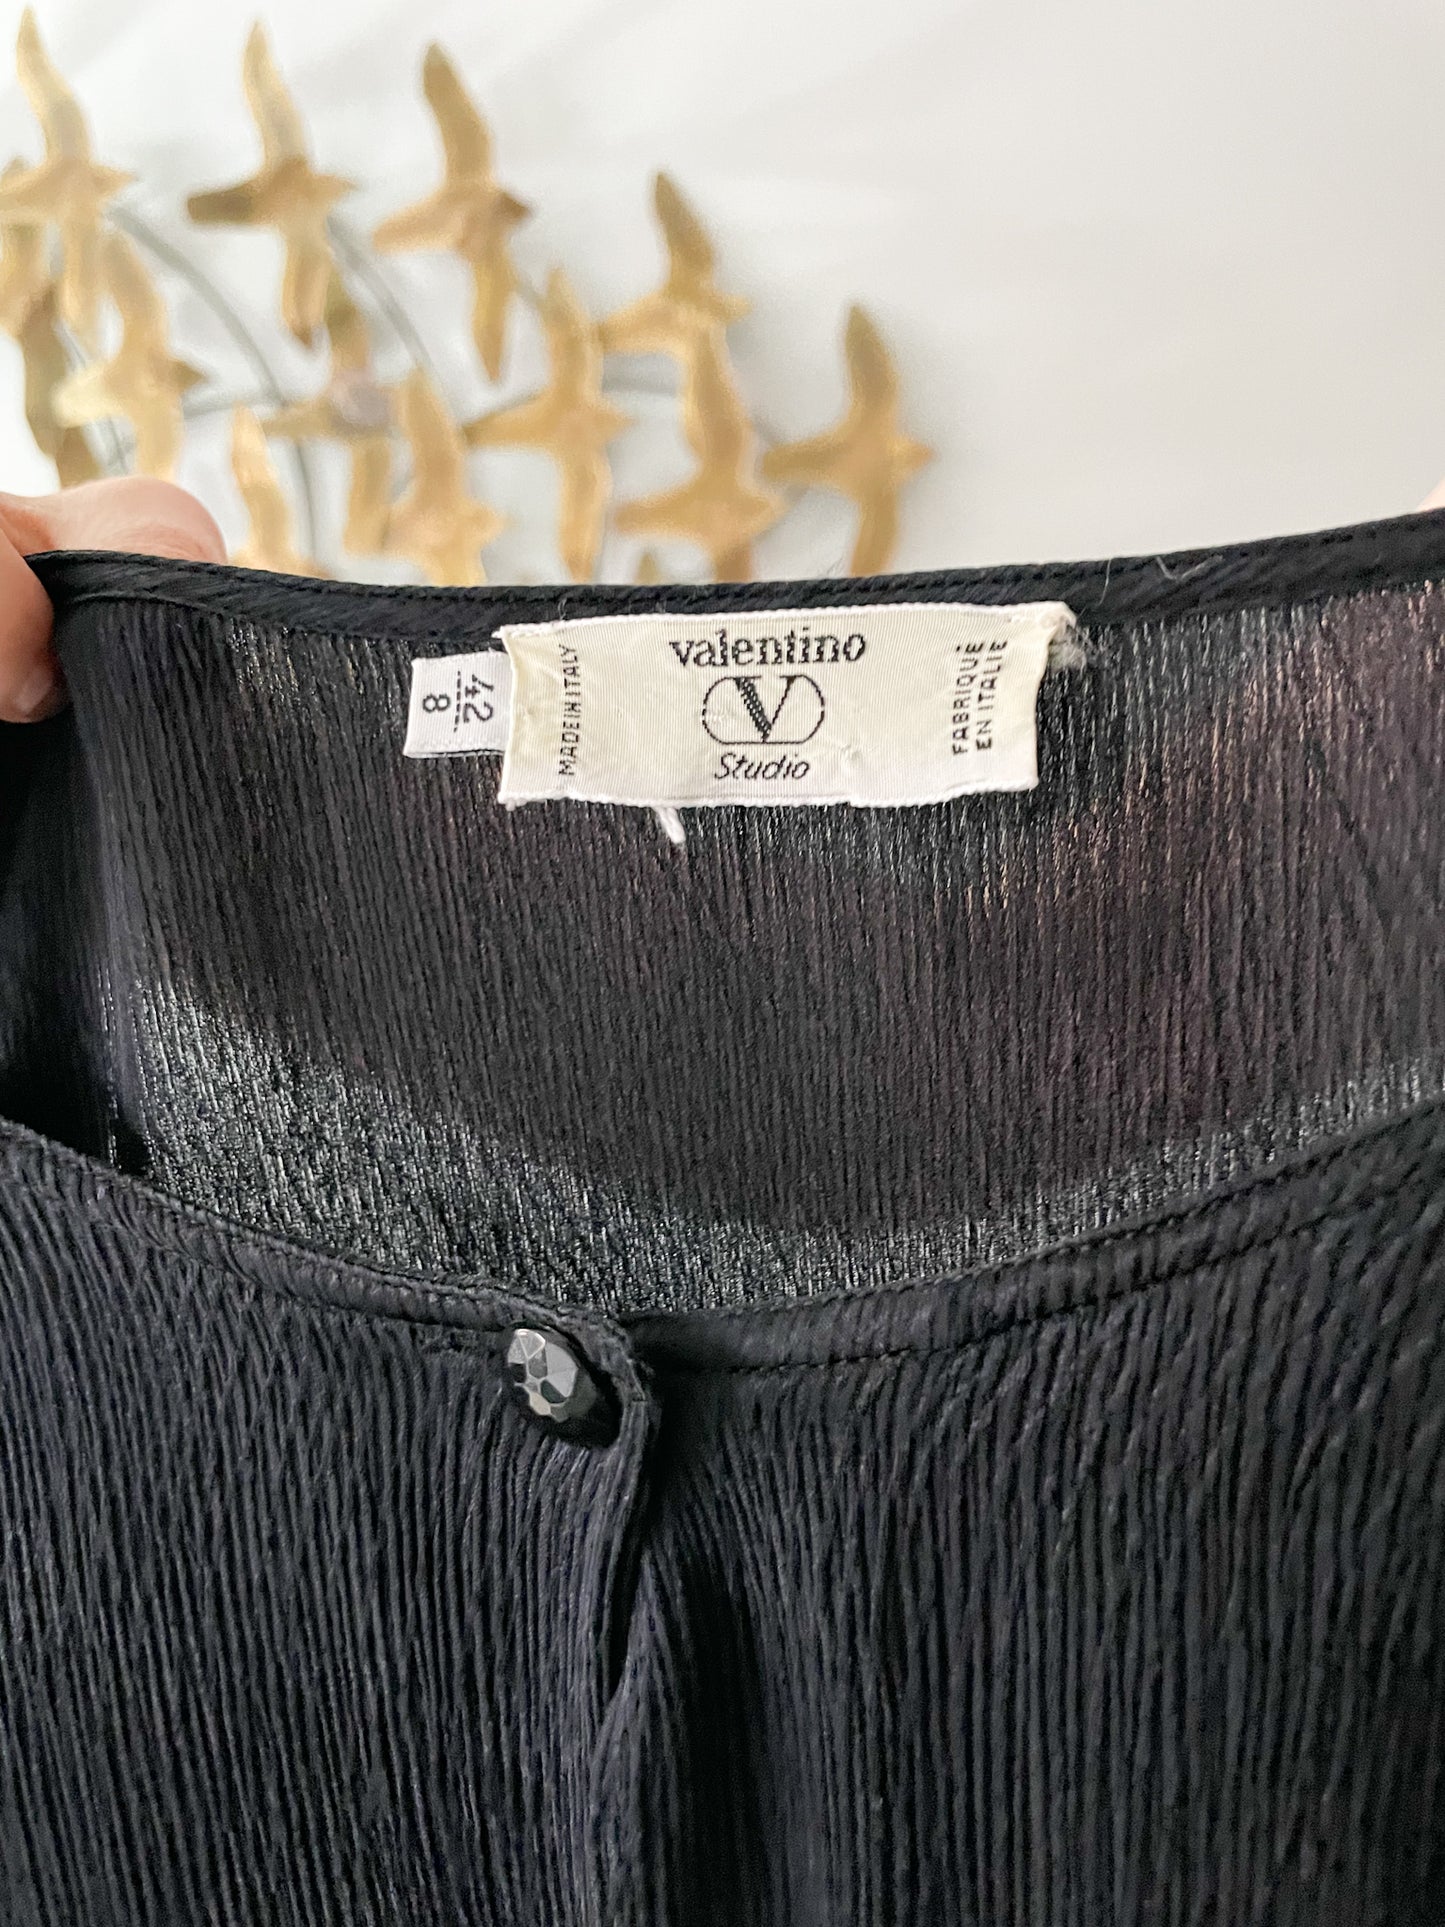 Valentino Black Silk Crepe de Chine Blouse - Size 8